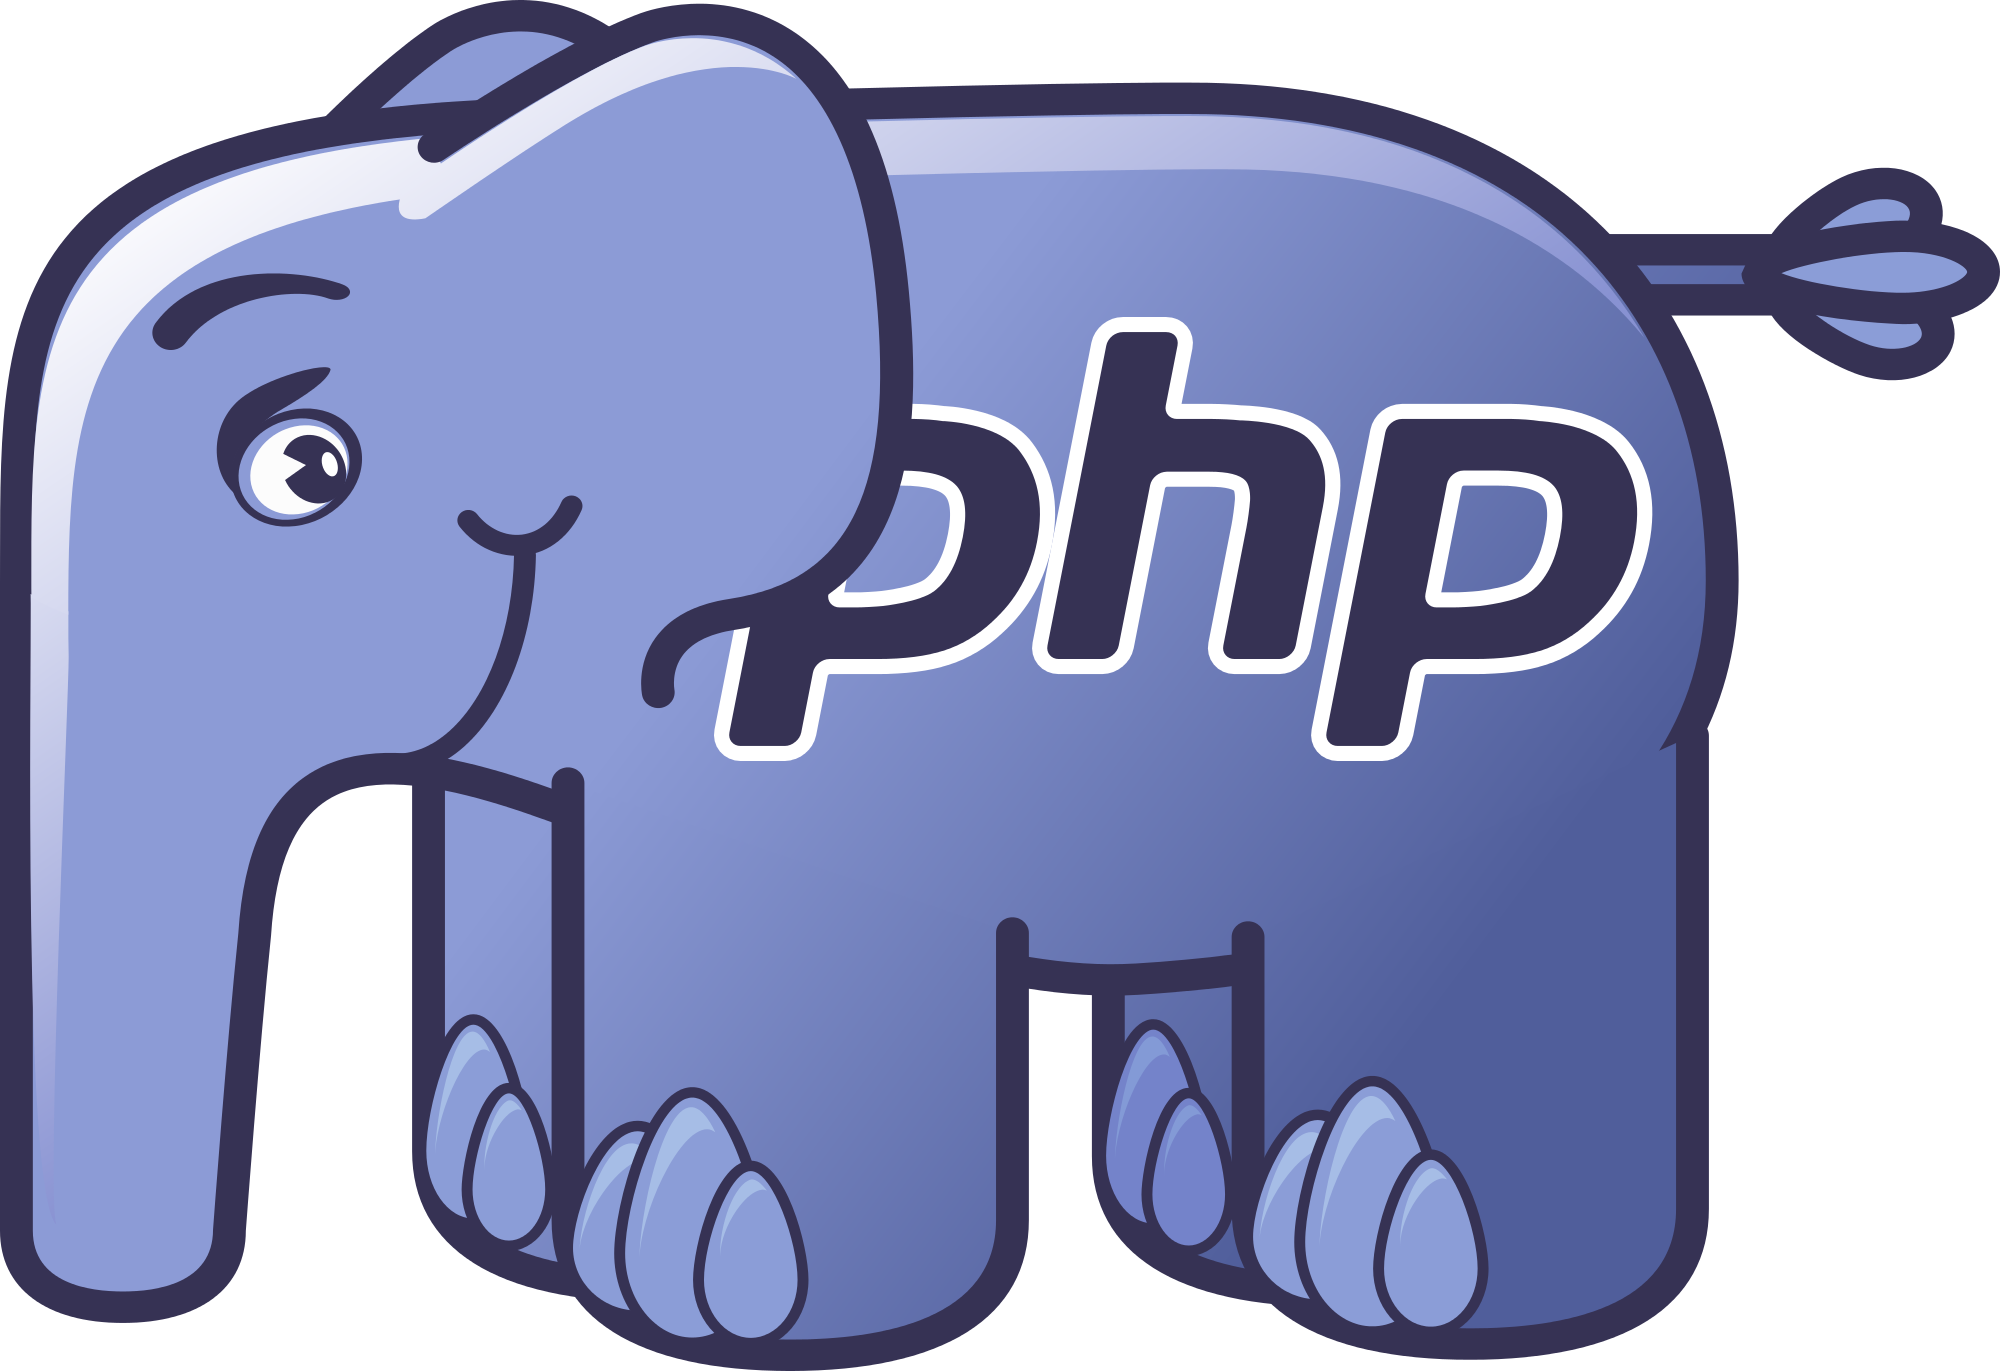 Язык программированияphp. Php язык программирования лого. Эмблема языка программирования php. Значок языка программирования php. Php 7.0